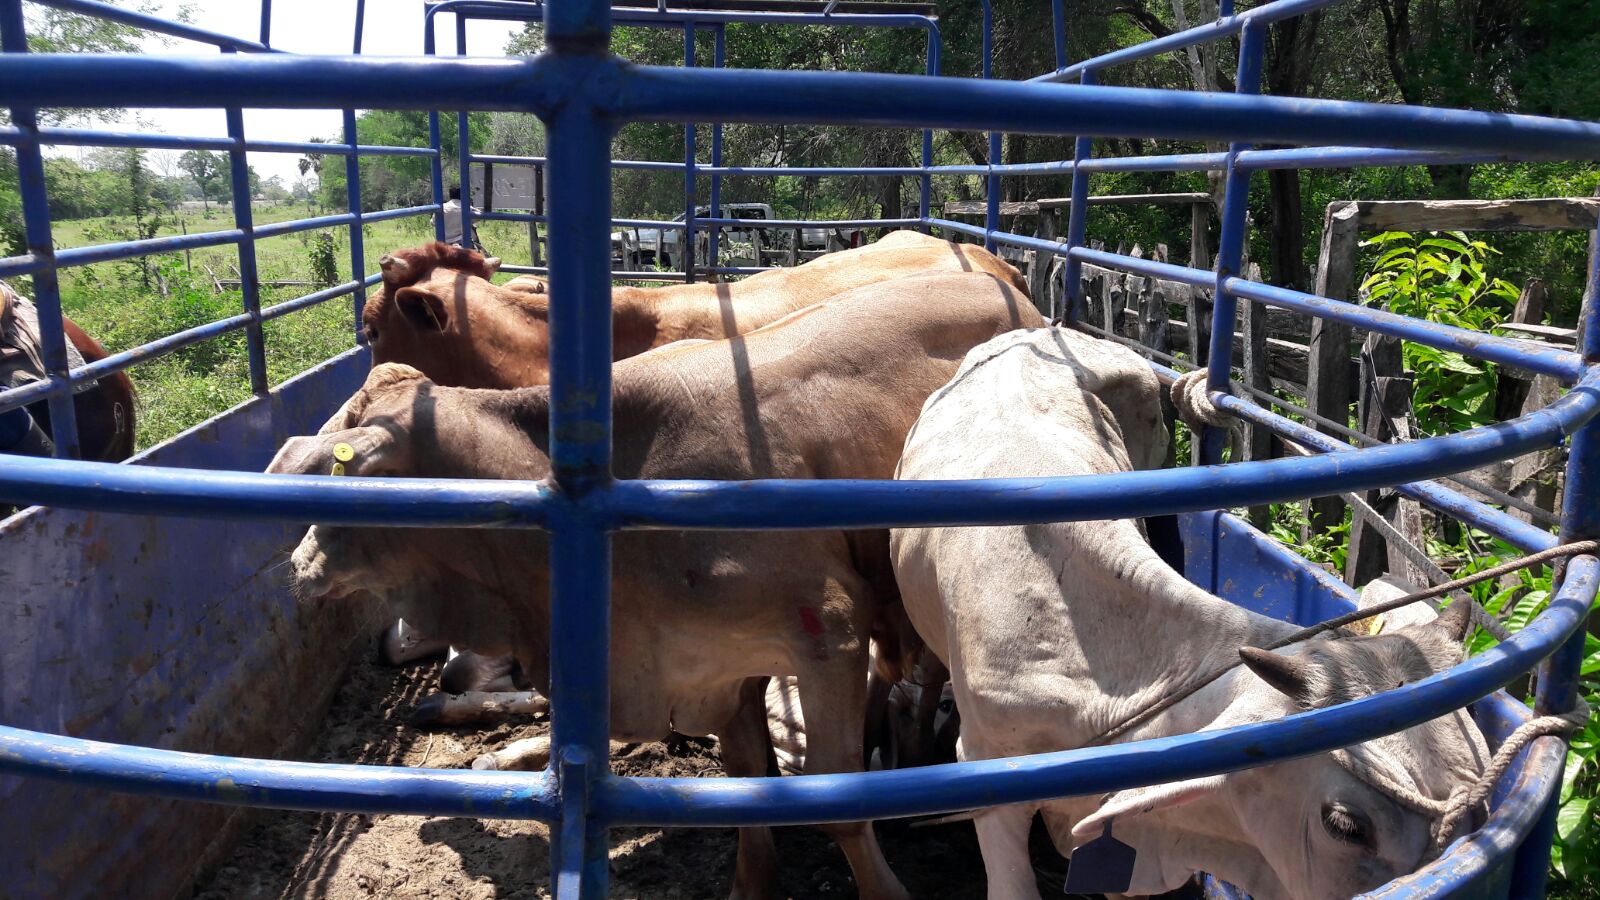 Van por quienes destazaron y robaron vacas en accidente de Tabasco